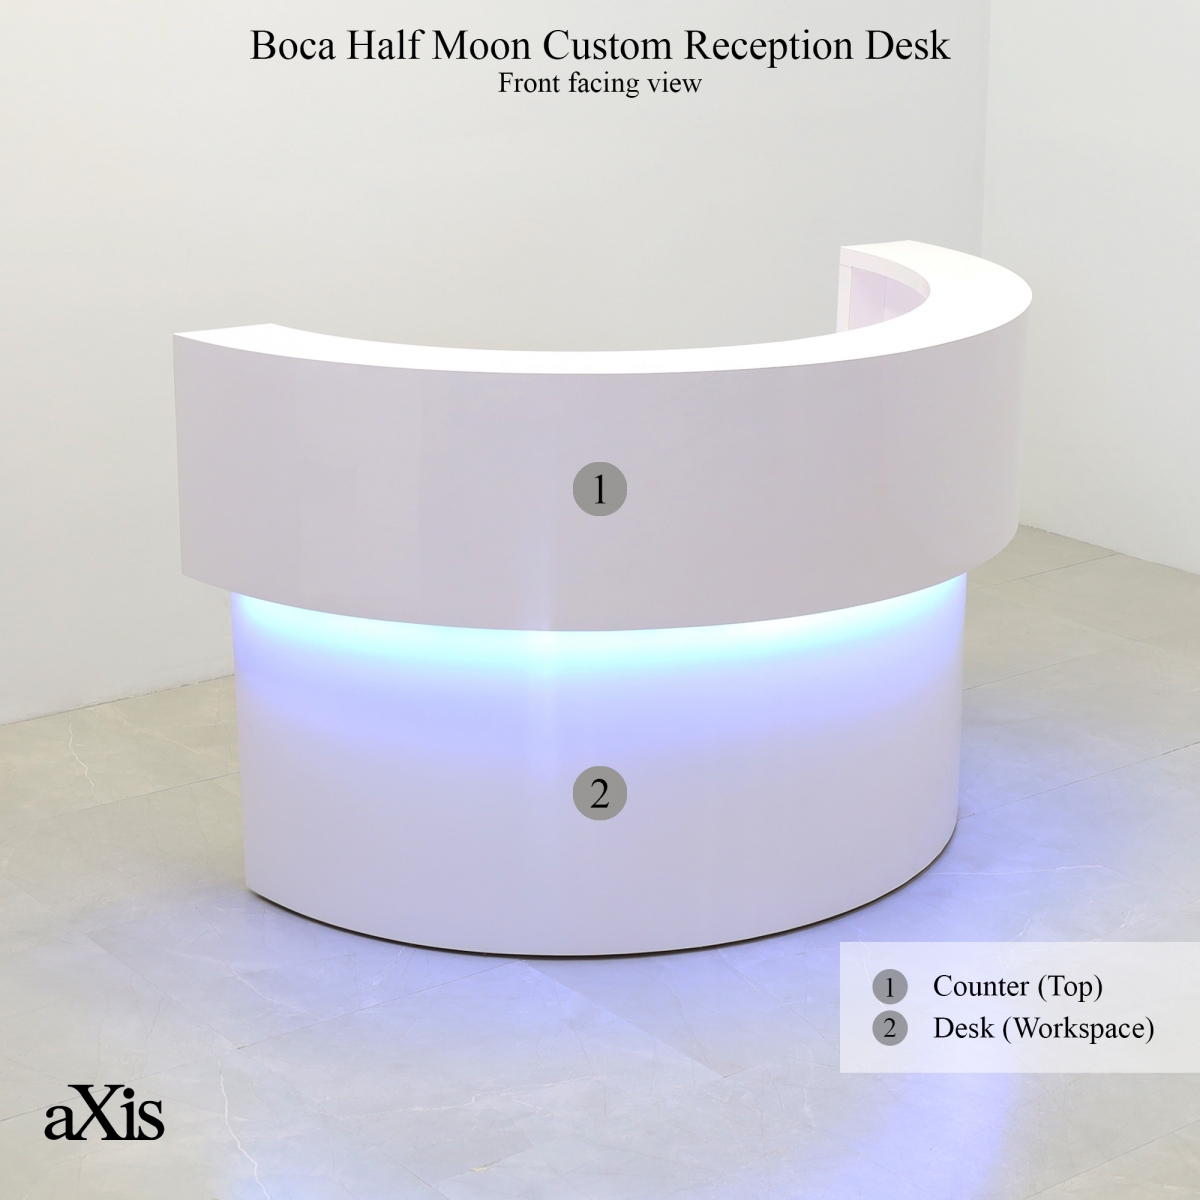 Boca Half Moon Custom Reception Desk